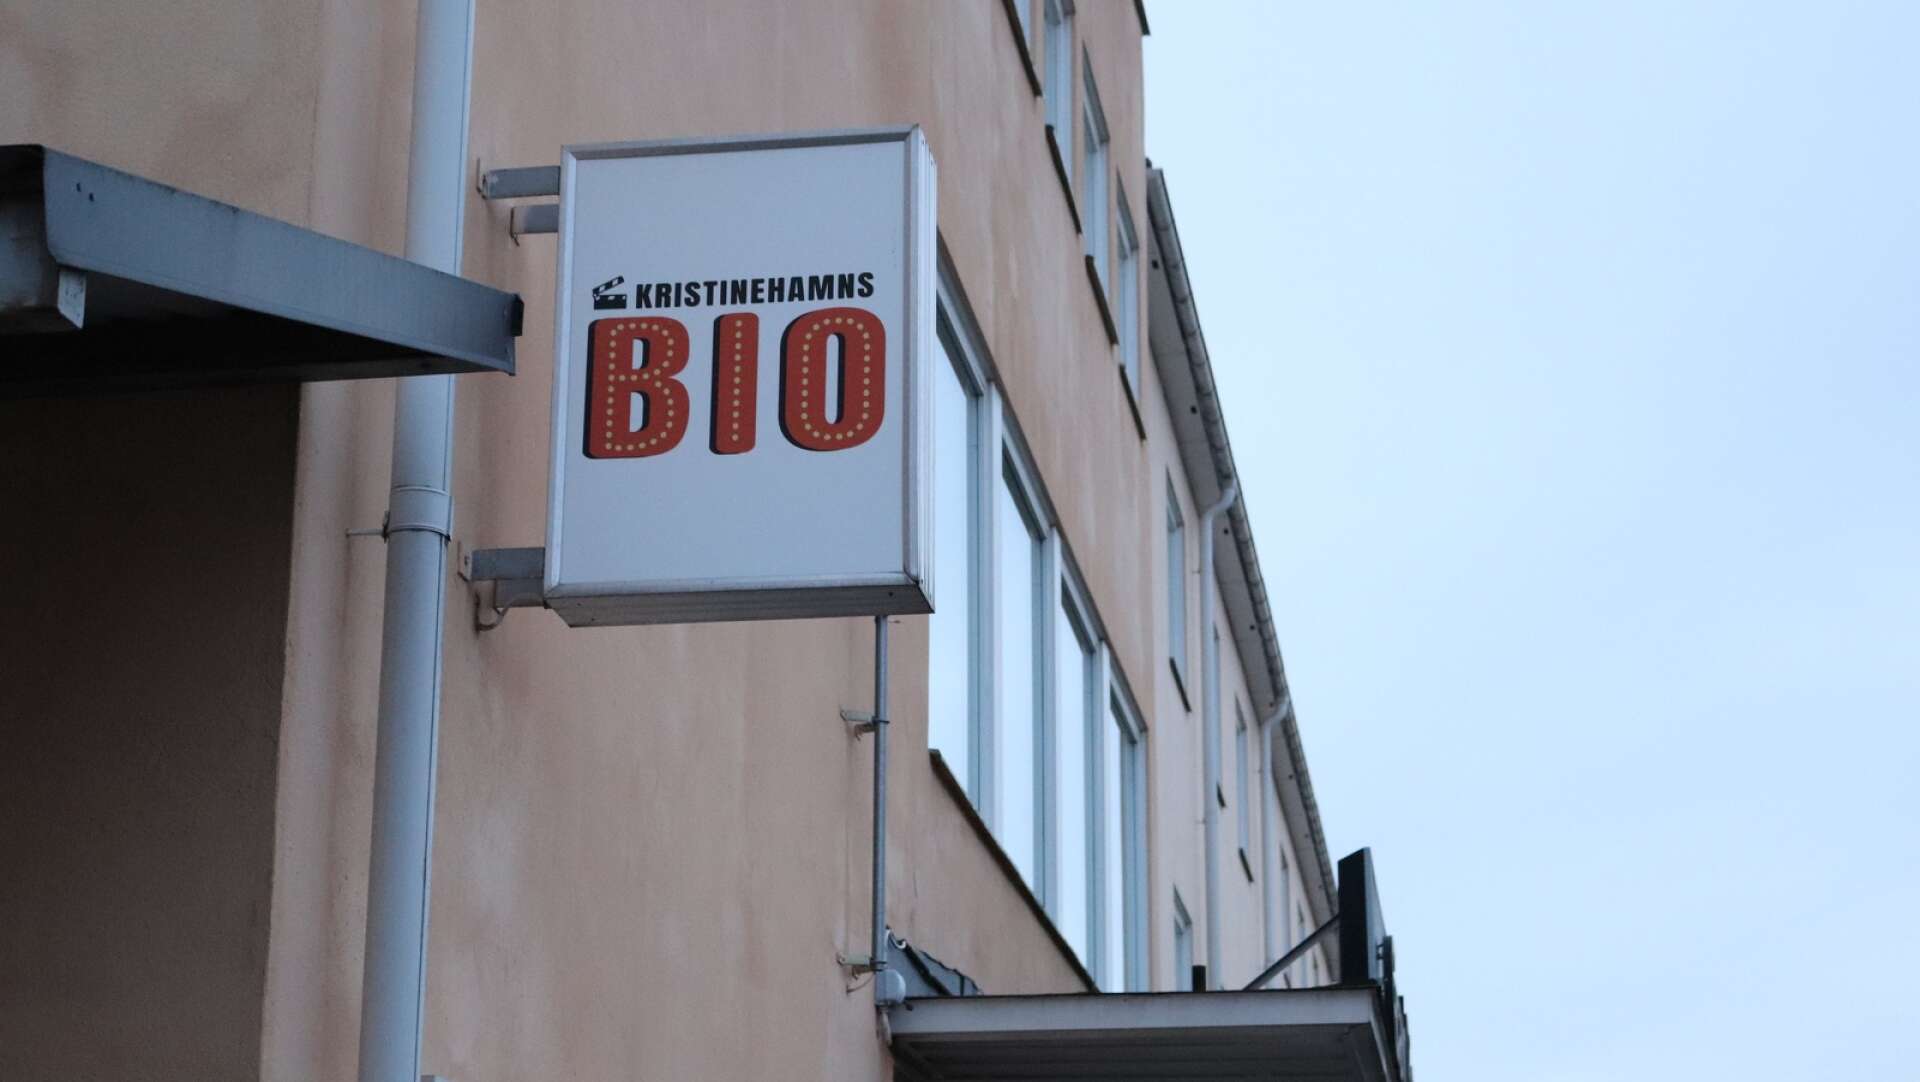 Biografen i Kristinehamn kan tvingas stänga den 1 oktober. Då löper avtalet mellan kommunen och entreprenören Patrik Ekman ut.